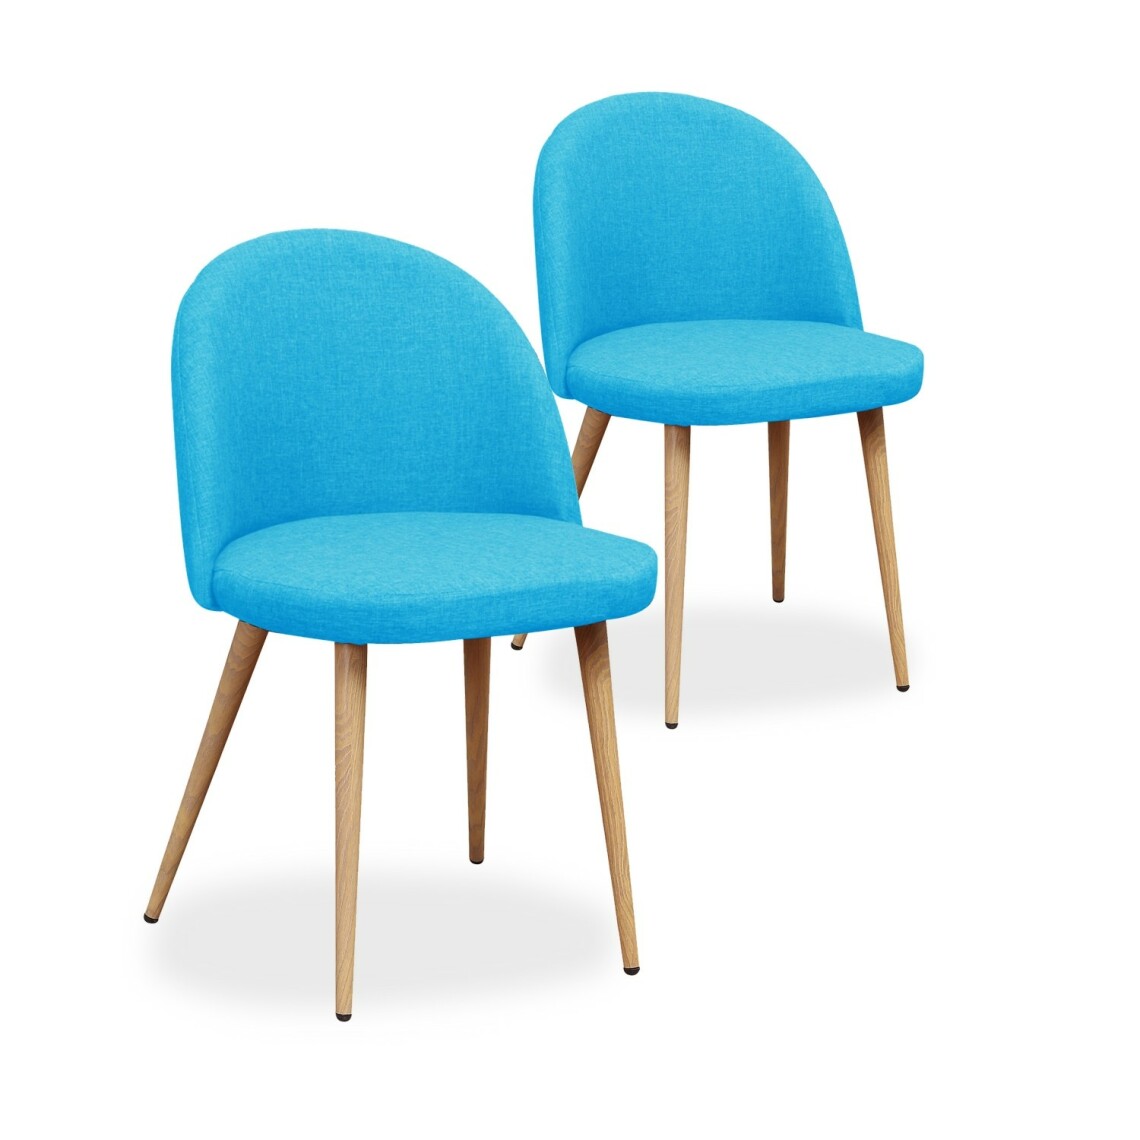 marque generique - Lot de 2 chaises scandinaves Cecilia tissu Bleu - Chaises